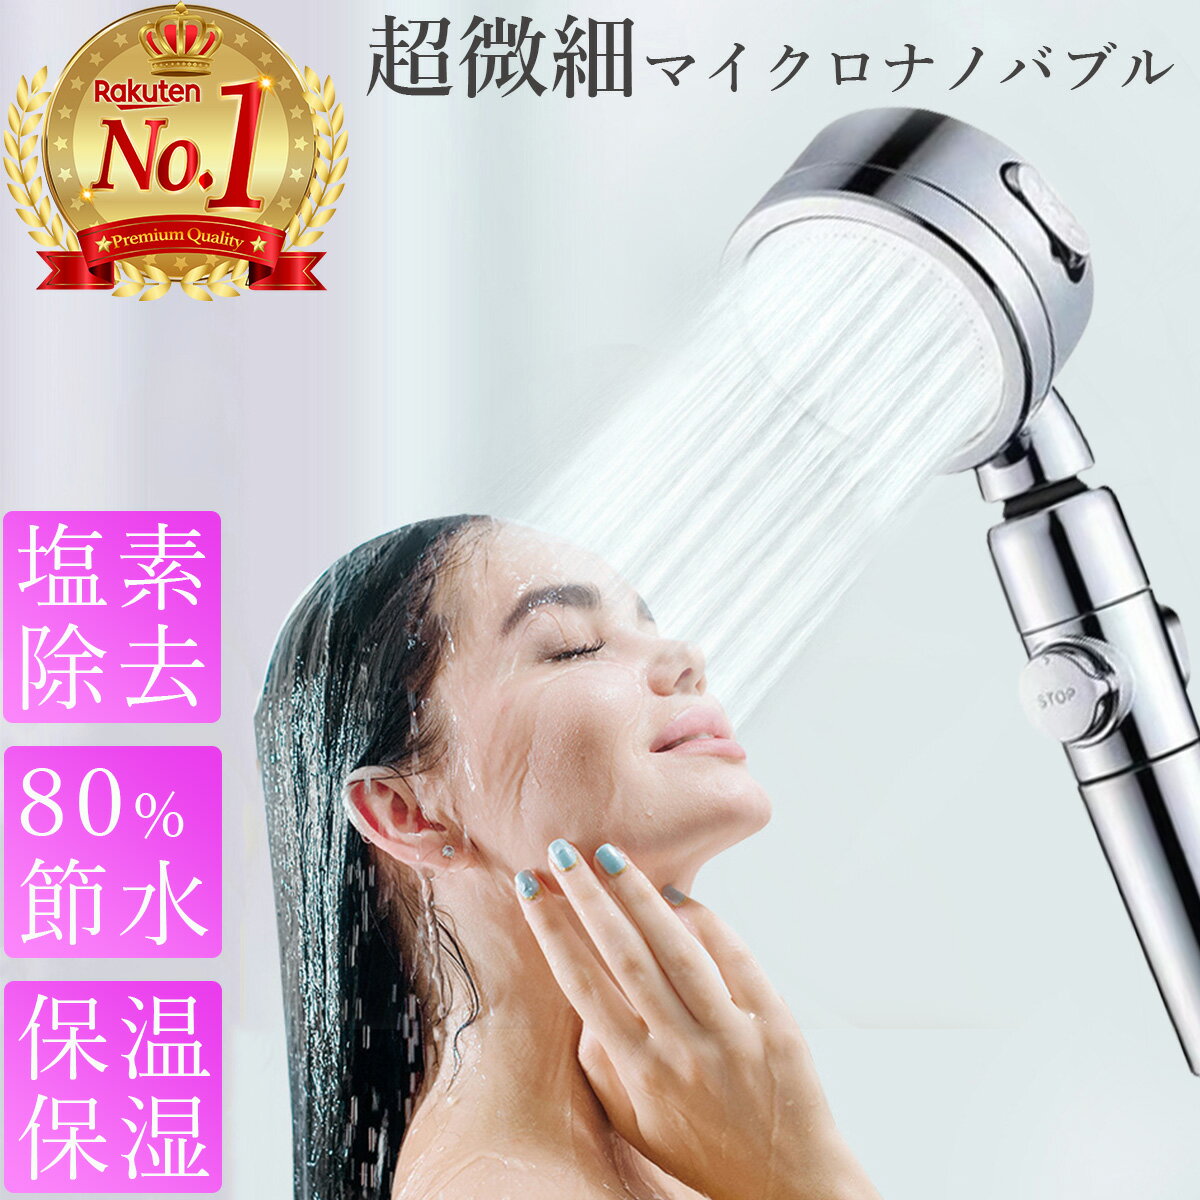 【あす楽・安心保証】シャワーヘッド マイクロナノバブル 美肌